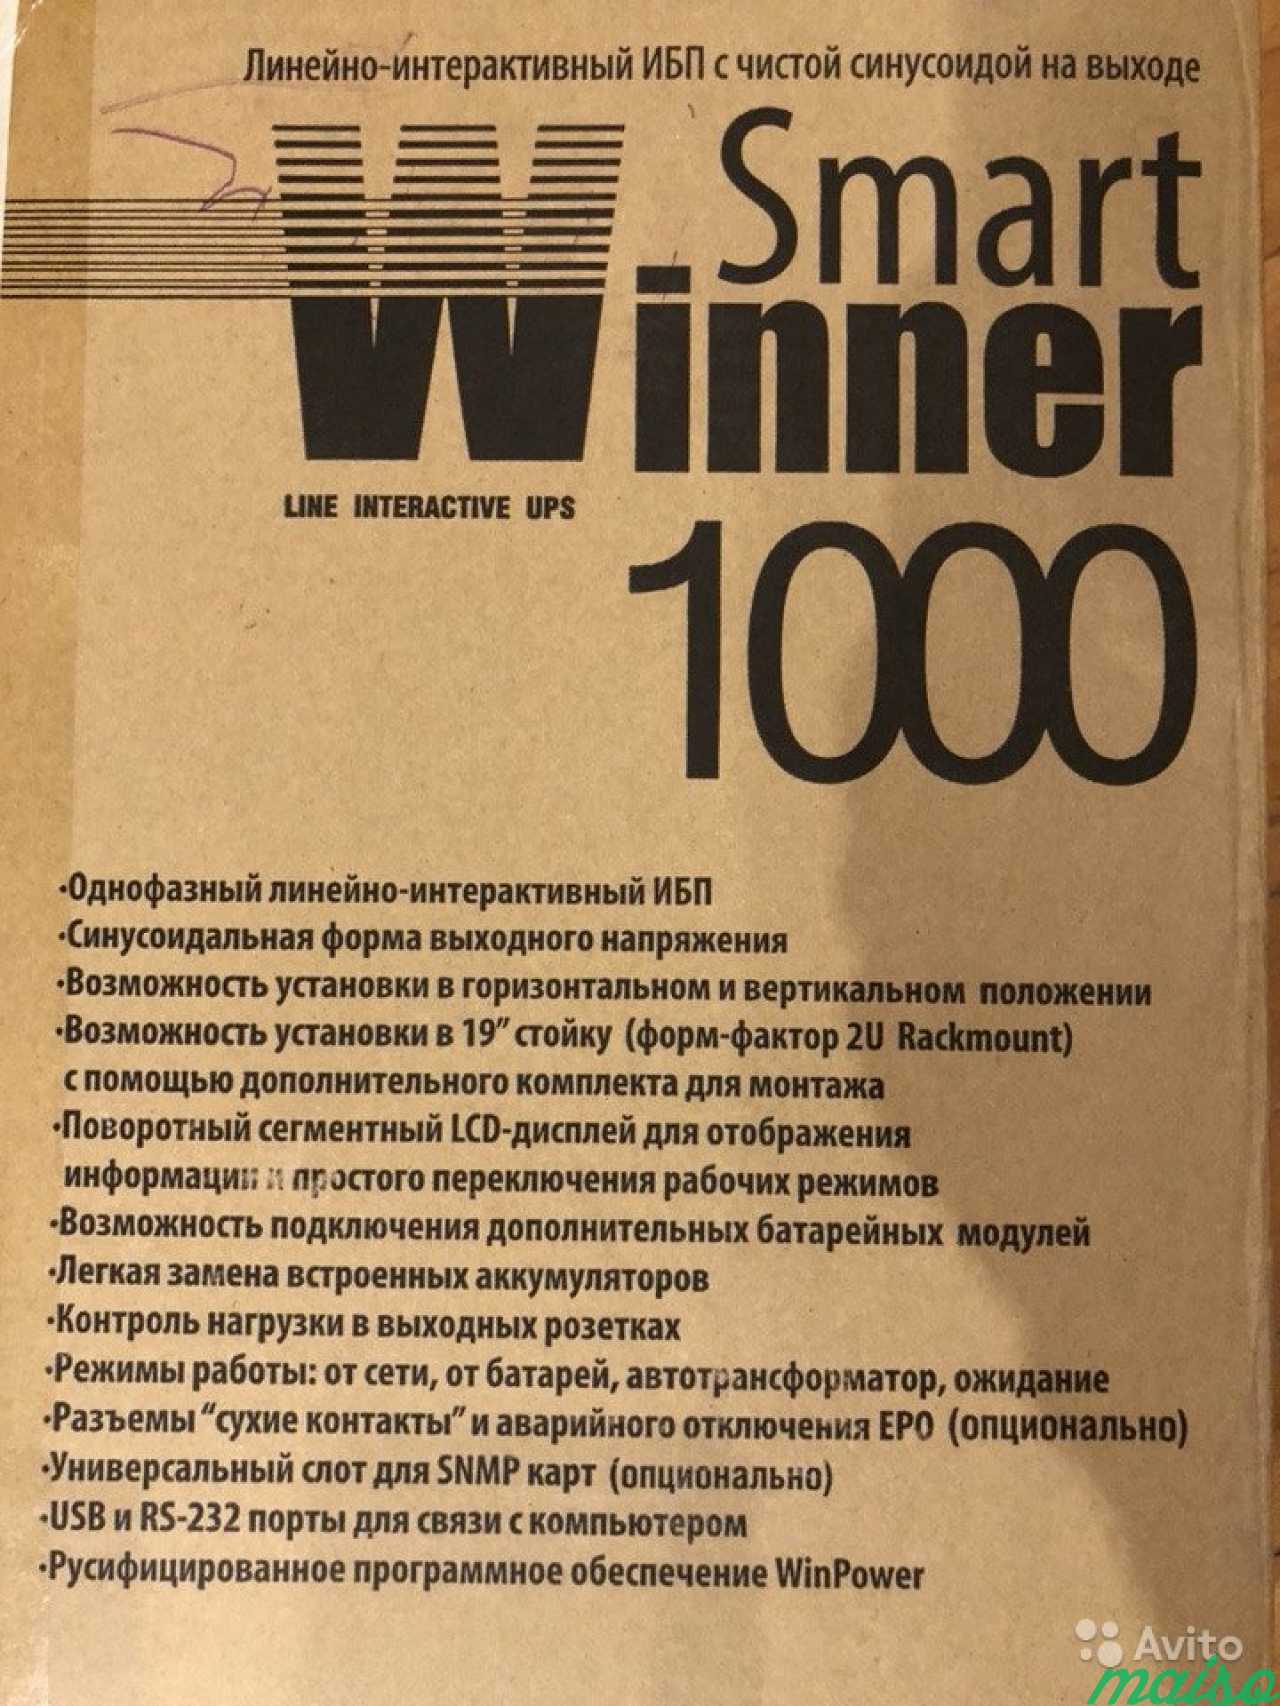 Линейно-интерактивный ибп smart winner 1000 в Санкт-Петербурге. Фото 3